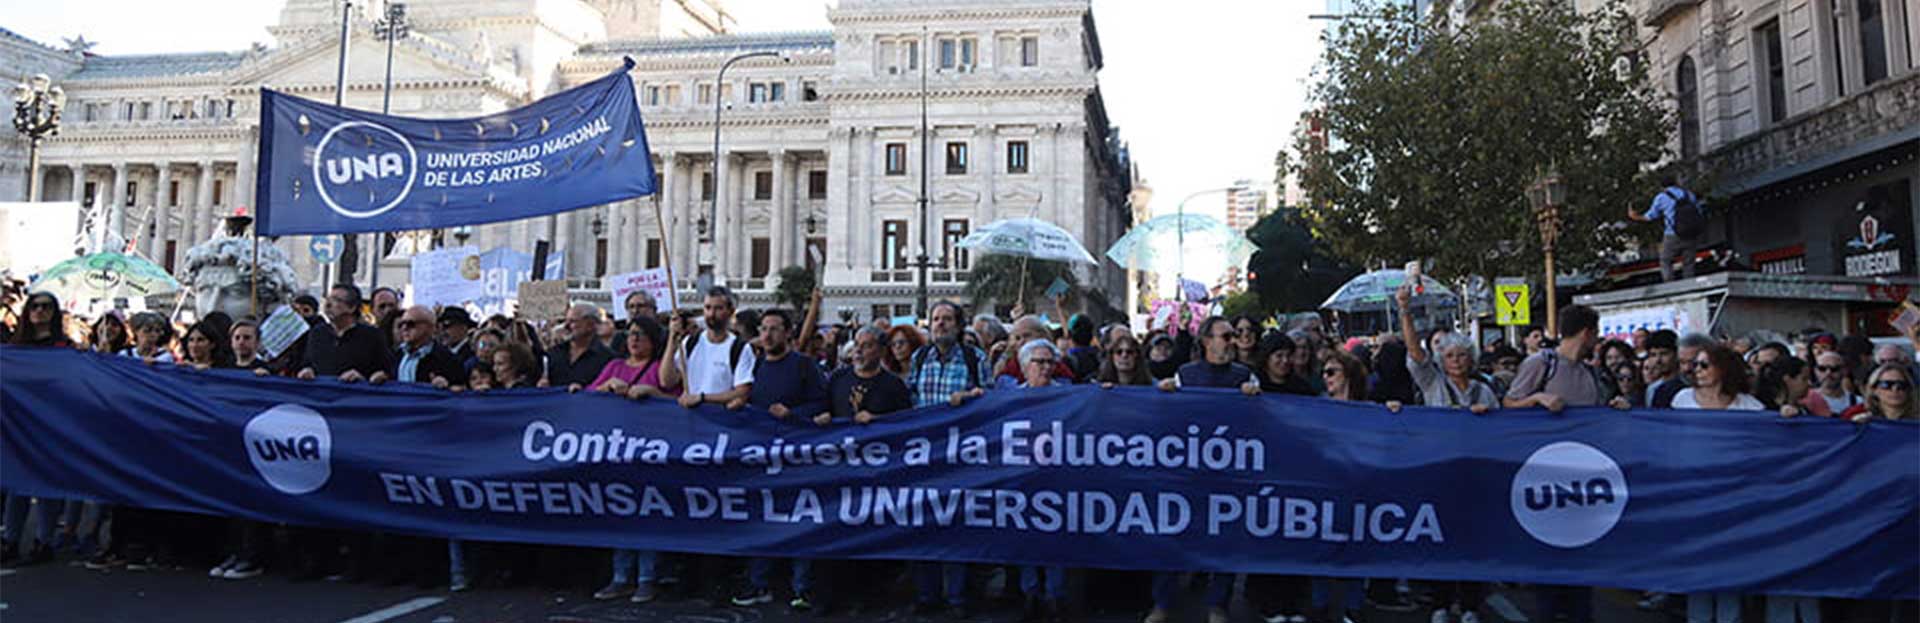 Llenamos las calles en defensa de la Universidad Pública